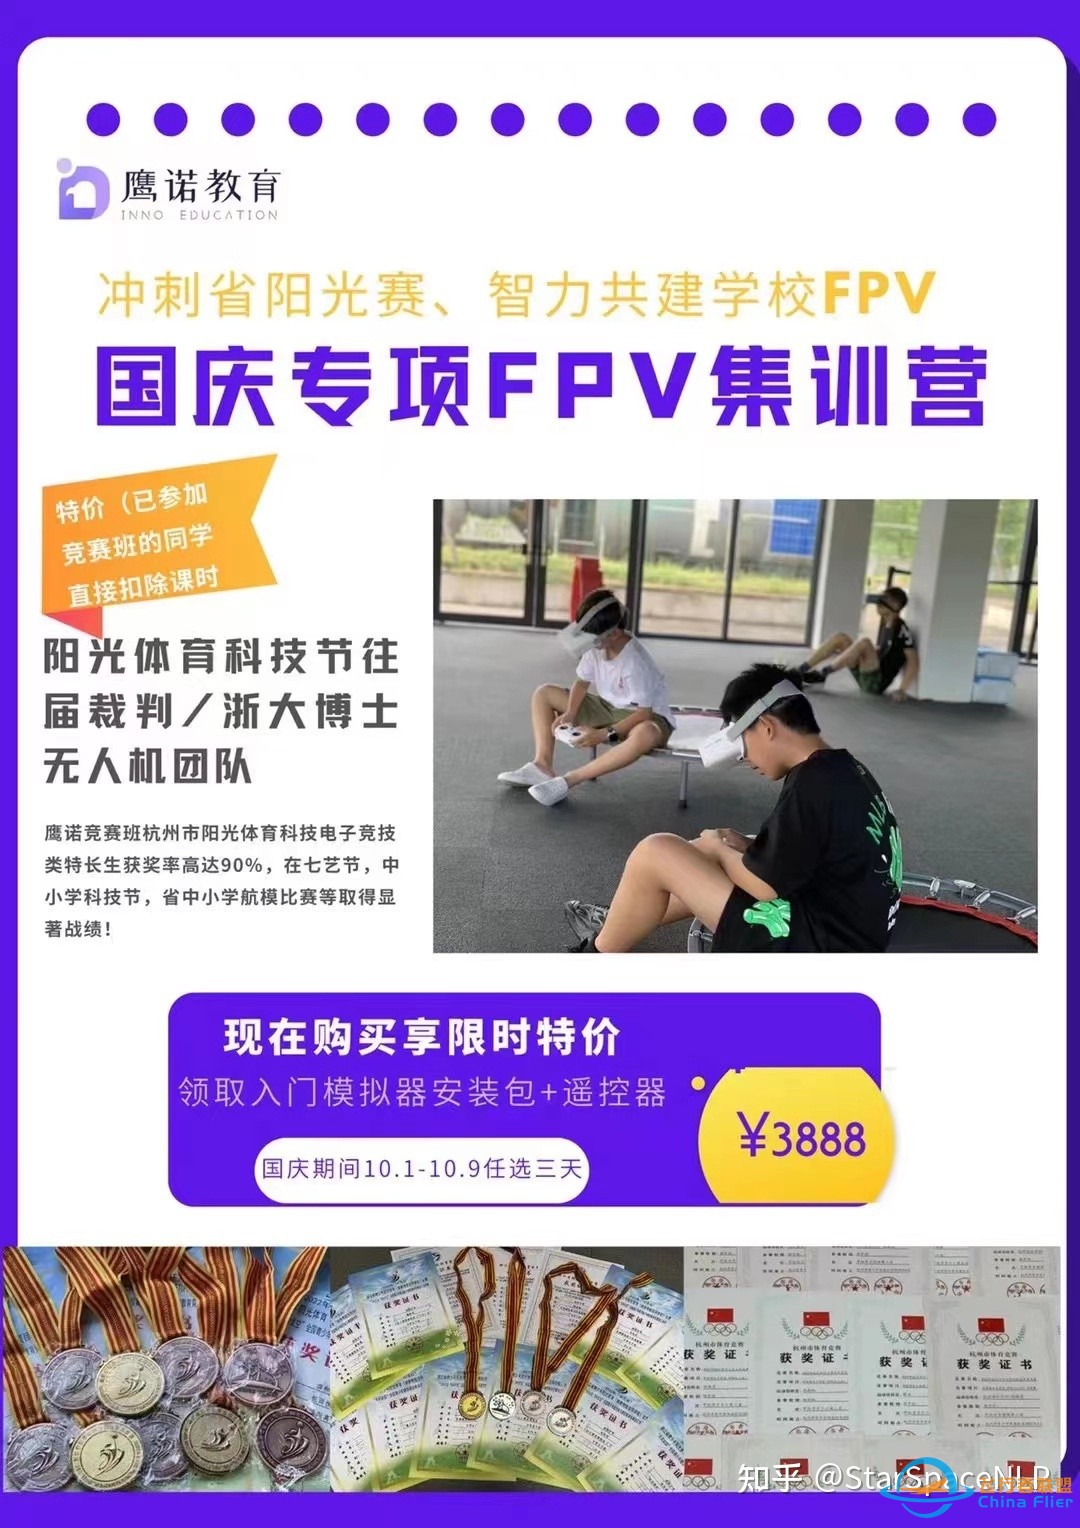 国庆专项FPV集训营还有6-8第二期-1.jpg